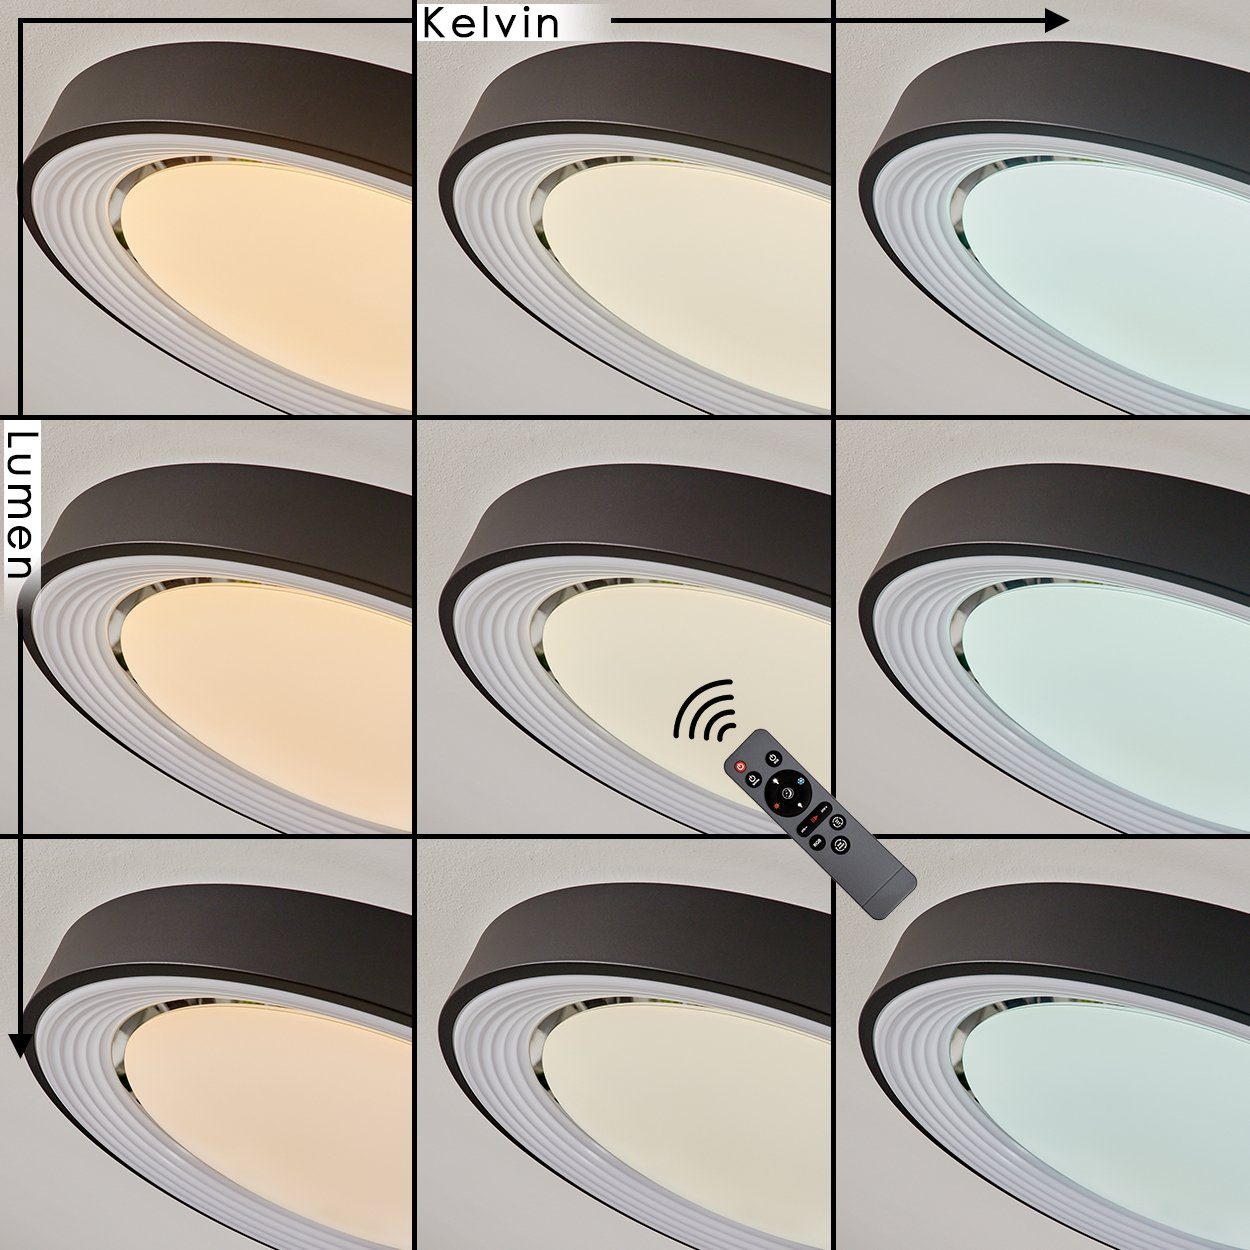 dimmbar/RGB Metall/Kunststoff Deckenlampe Deckenleuchte Kelvin, in »Chatillon« hofstein Schwarz/Weiß, Farbwechsel, Fernbedienung, Nachtlicht/Memory-Funktion 6500 aus